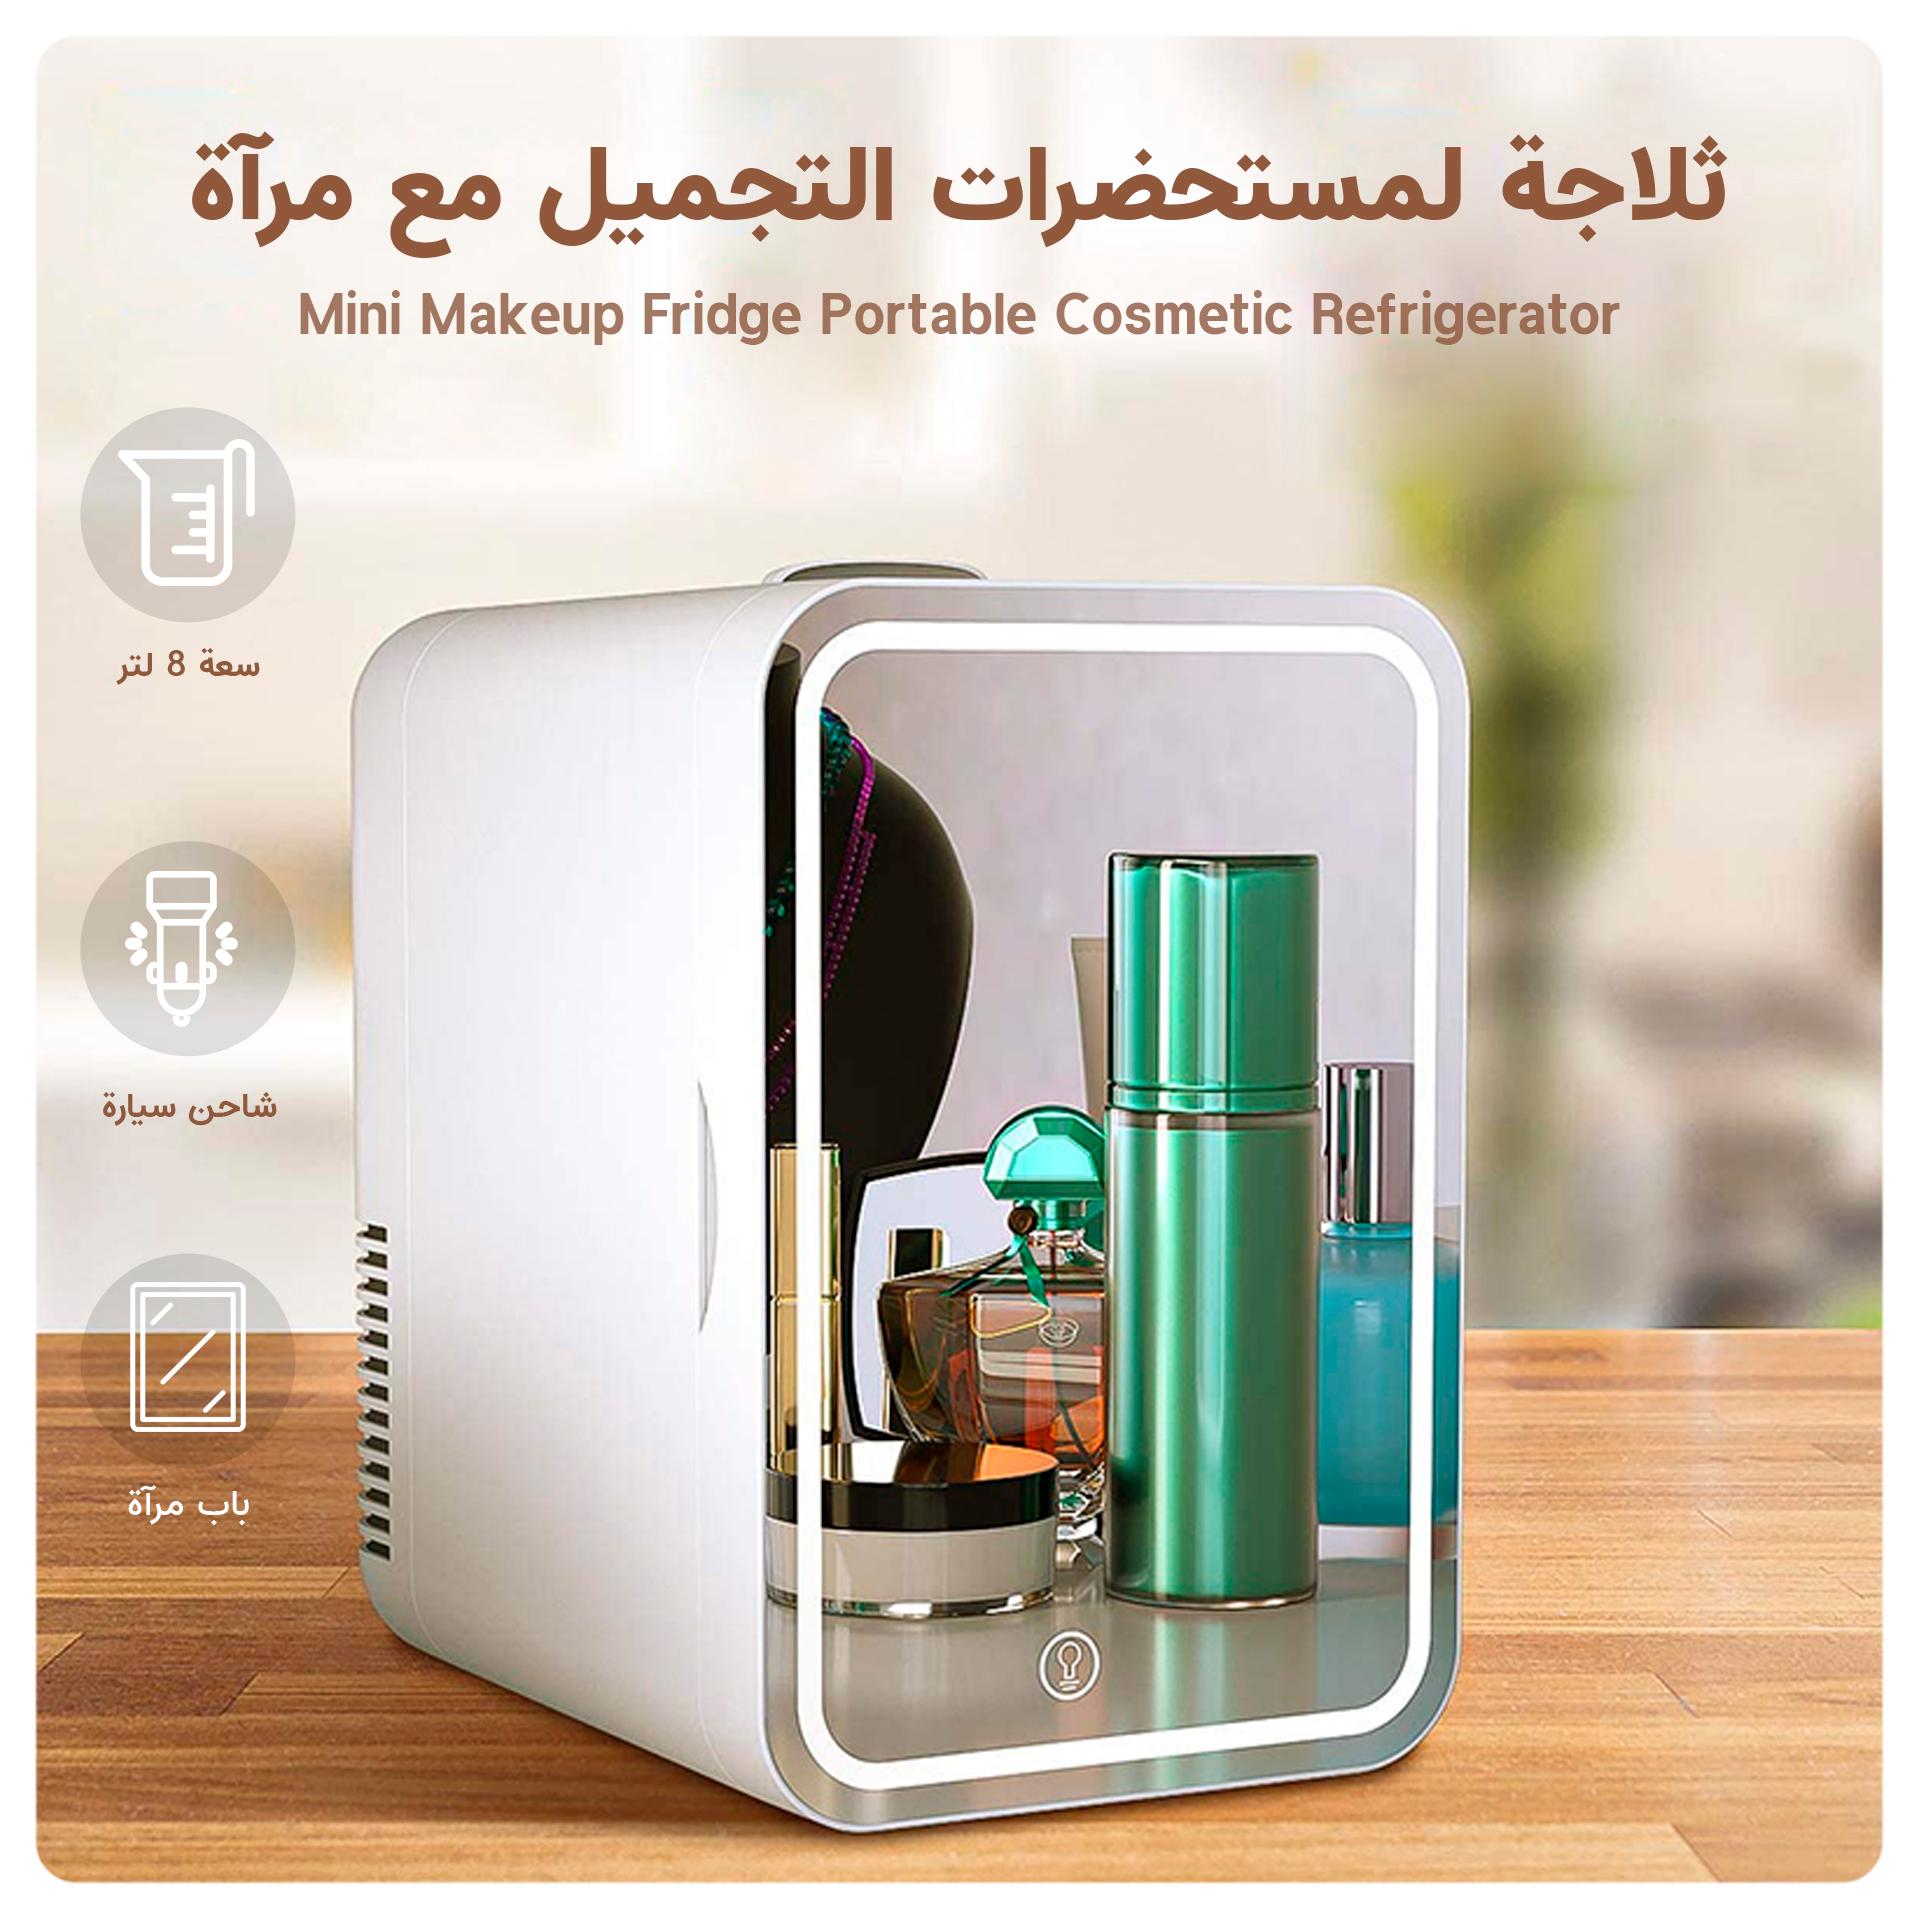 ثلاجة صغيرة لمستحضرات التجميل مع مرآة بسعة 8 ليتر Mini Makeup Fridge Portable Cosmetic Refrigerator - Cool baby